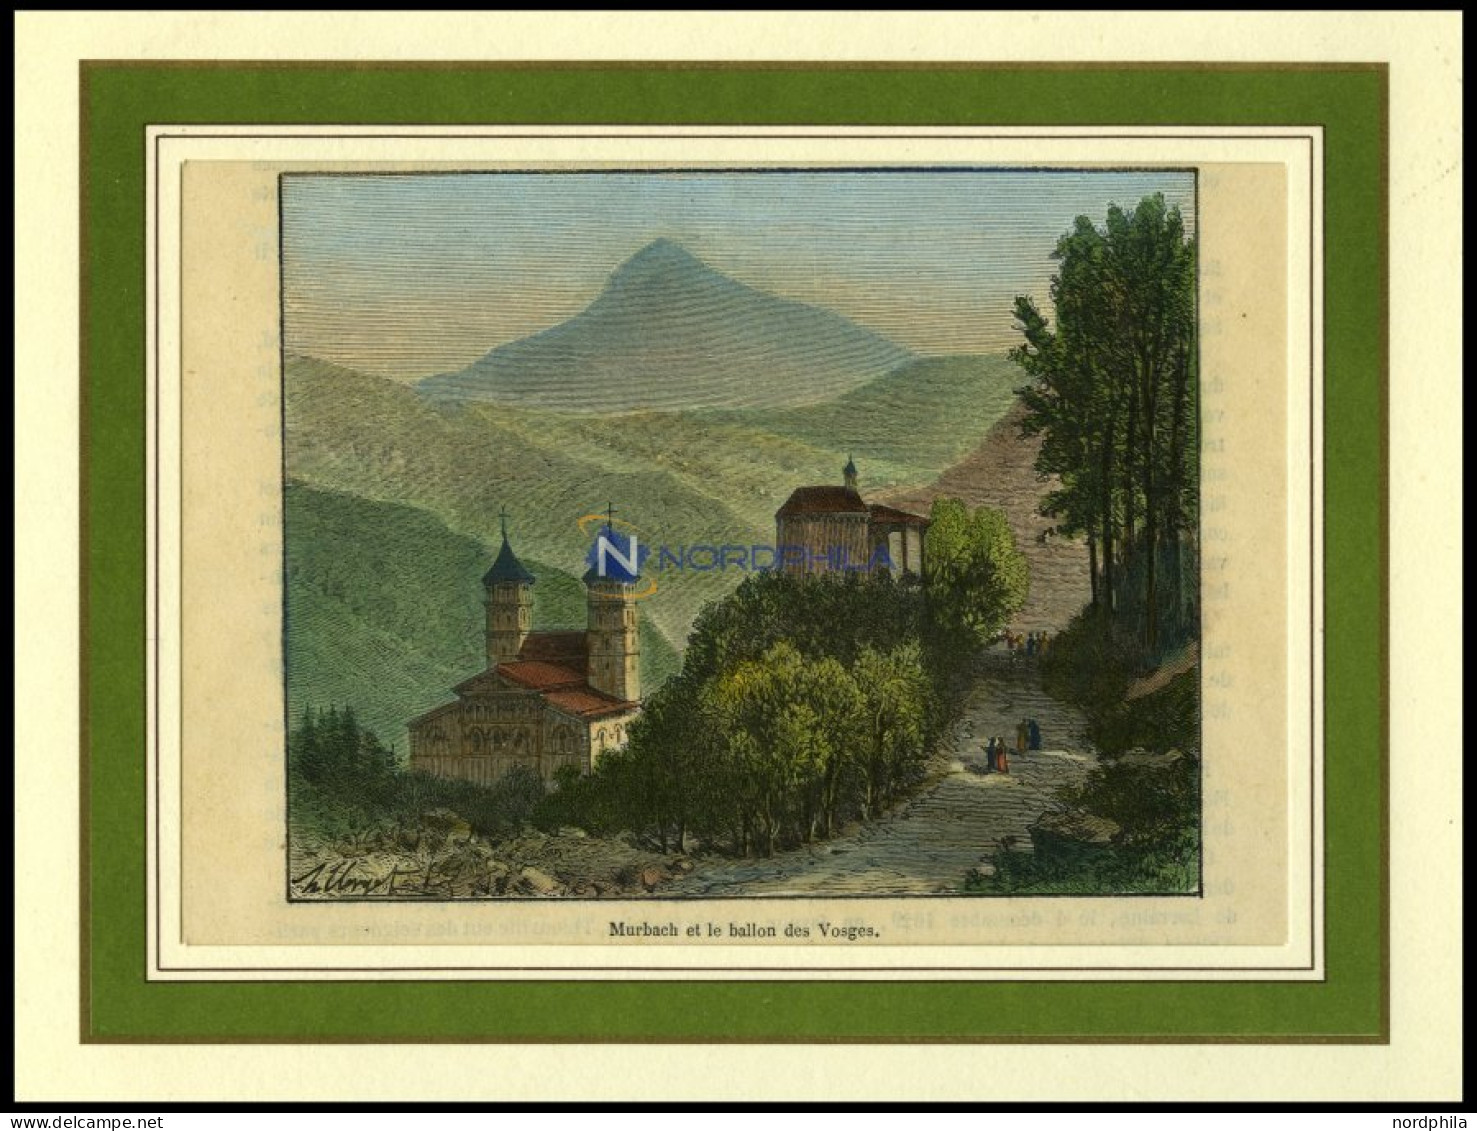 MURBACH, Gesamtansicht, Kolorierter Holzstich Aus Malte-Brun Um 1880 - Lithographien